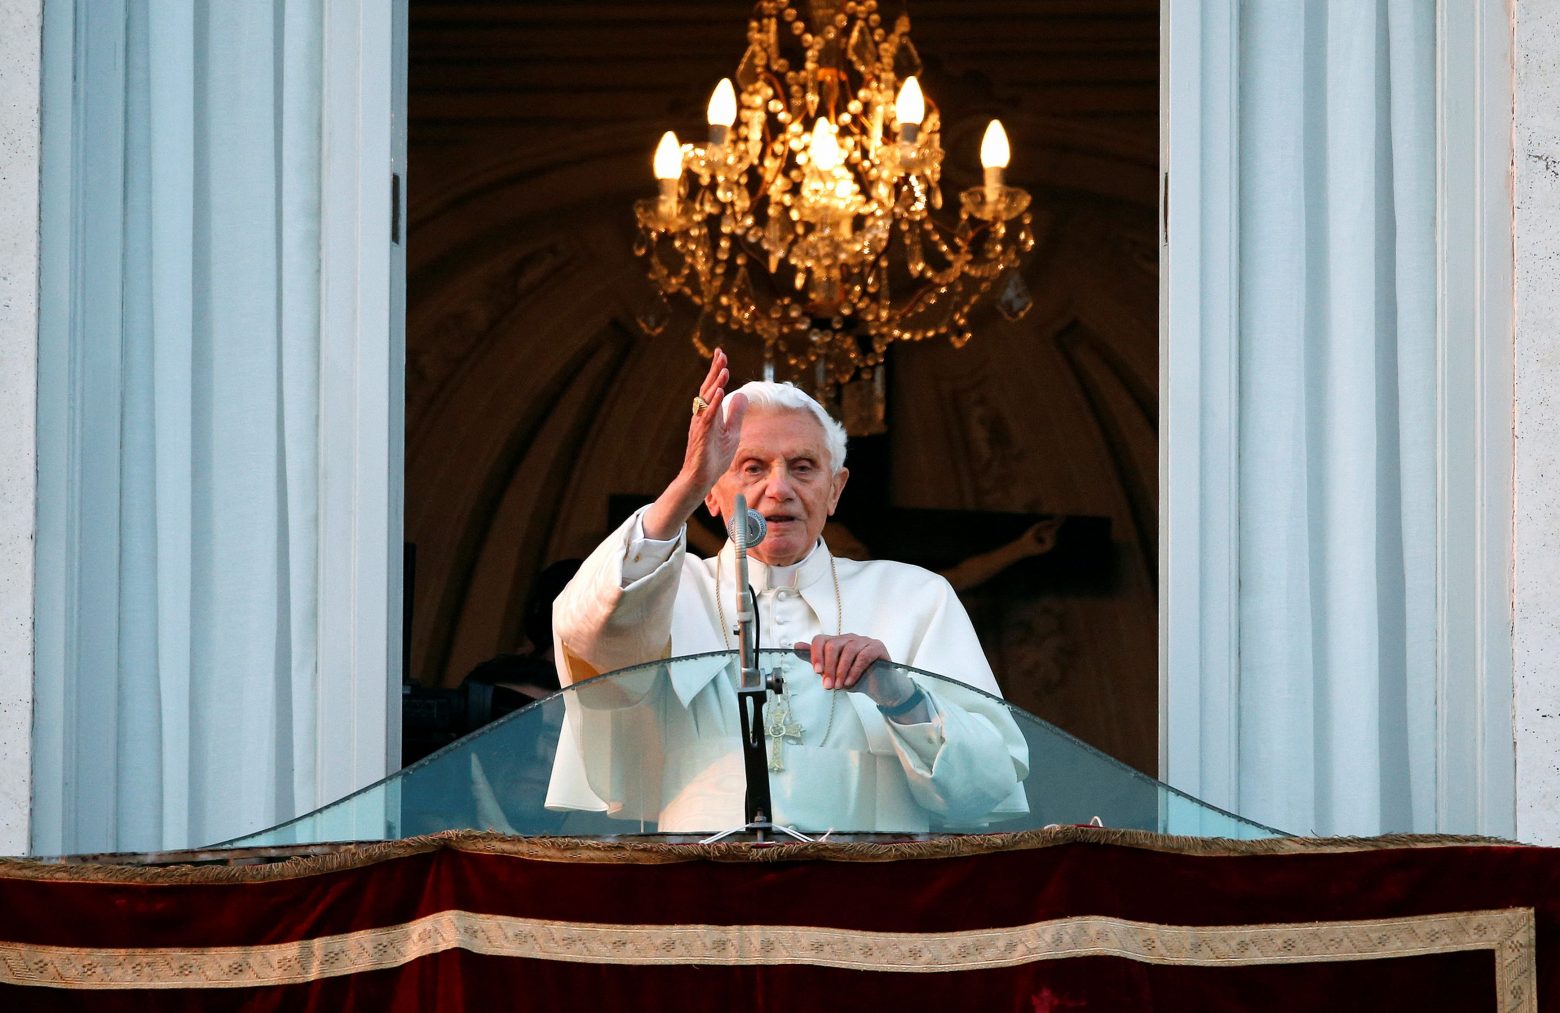 Πάπας Βενέδικτος ΙΣΤ’ - Παραδέχεται ότι γνώριζε για τους παιδεραστές ιερείς ήδη από τη δεκαετία του ‘80